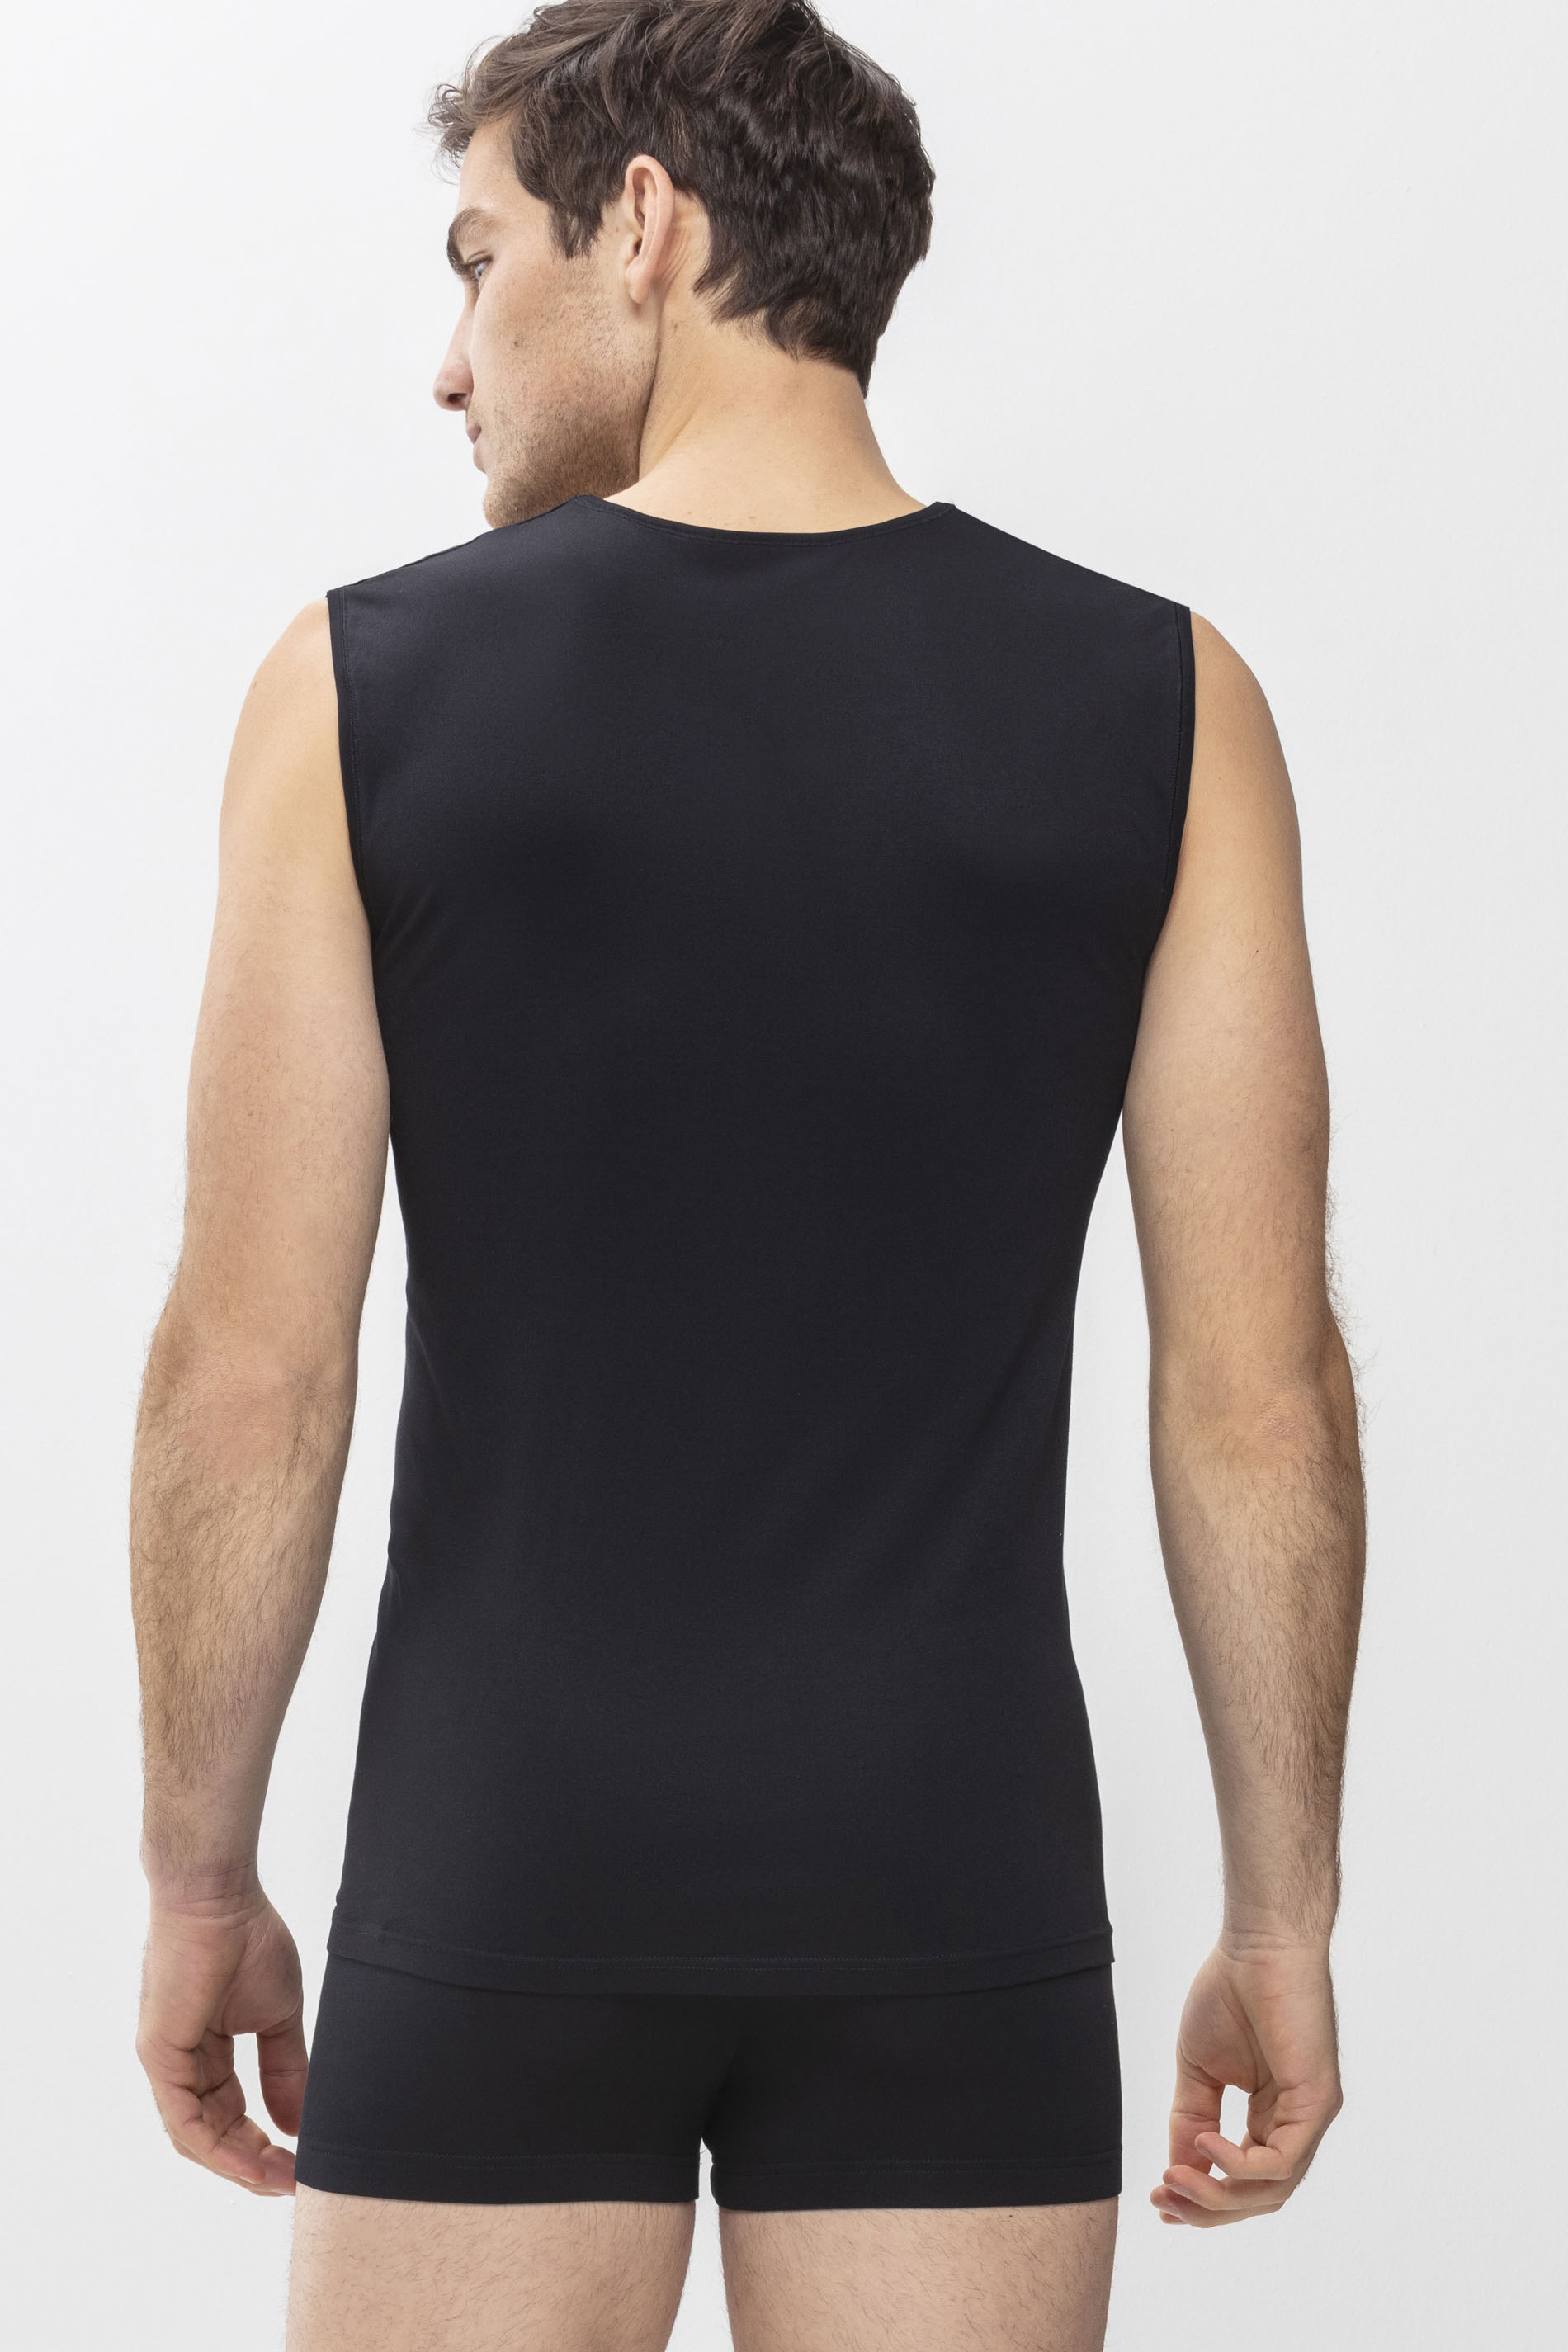 Muskel-Shirt Schwarz Serie Software Rückansicht | mey®